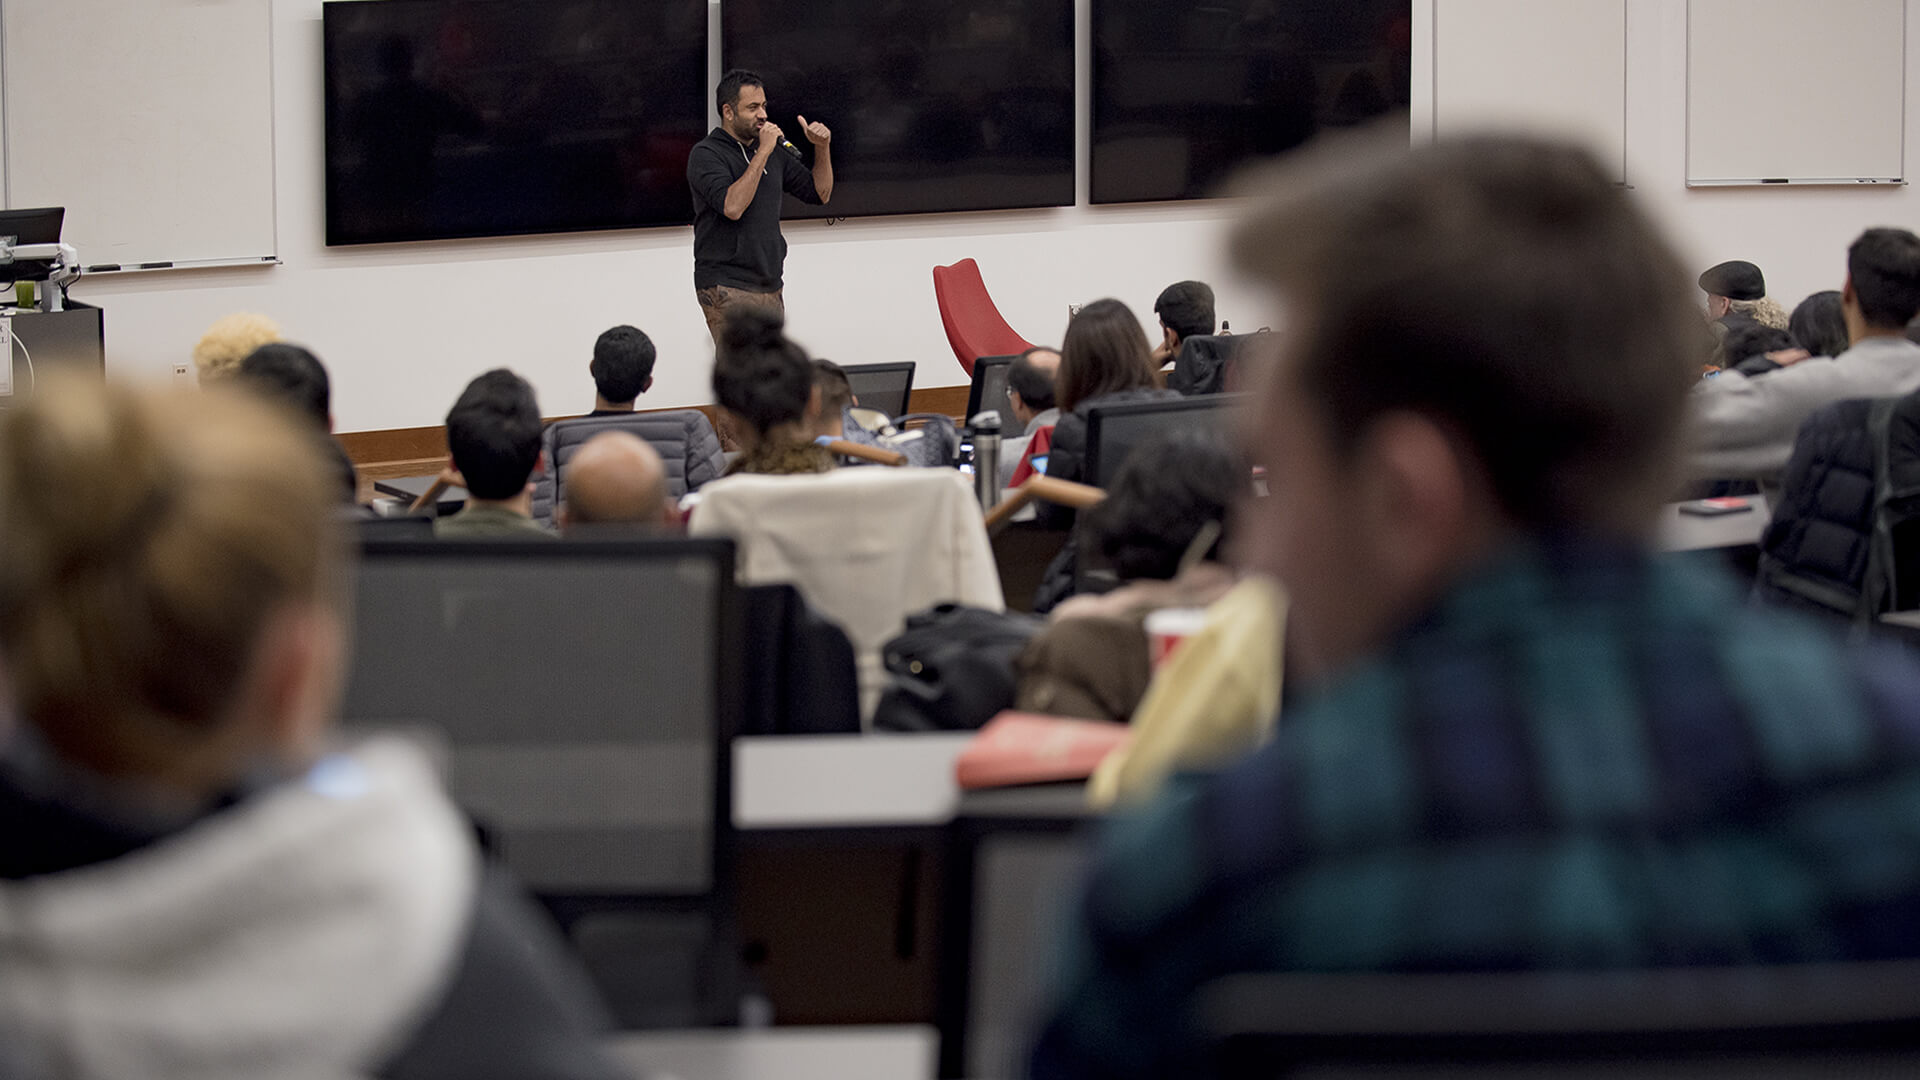 Kal Penn talks on campus